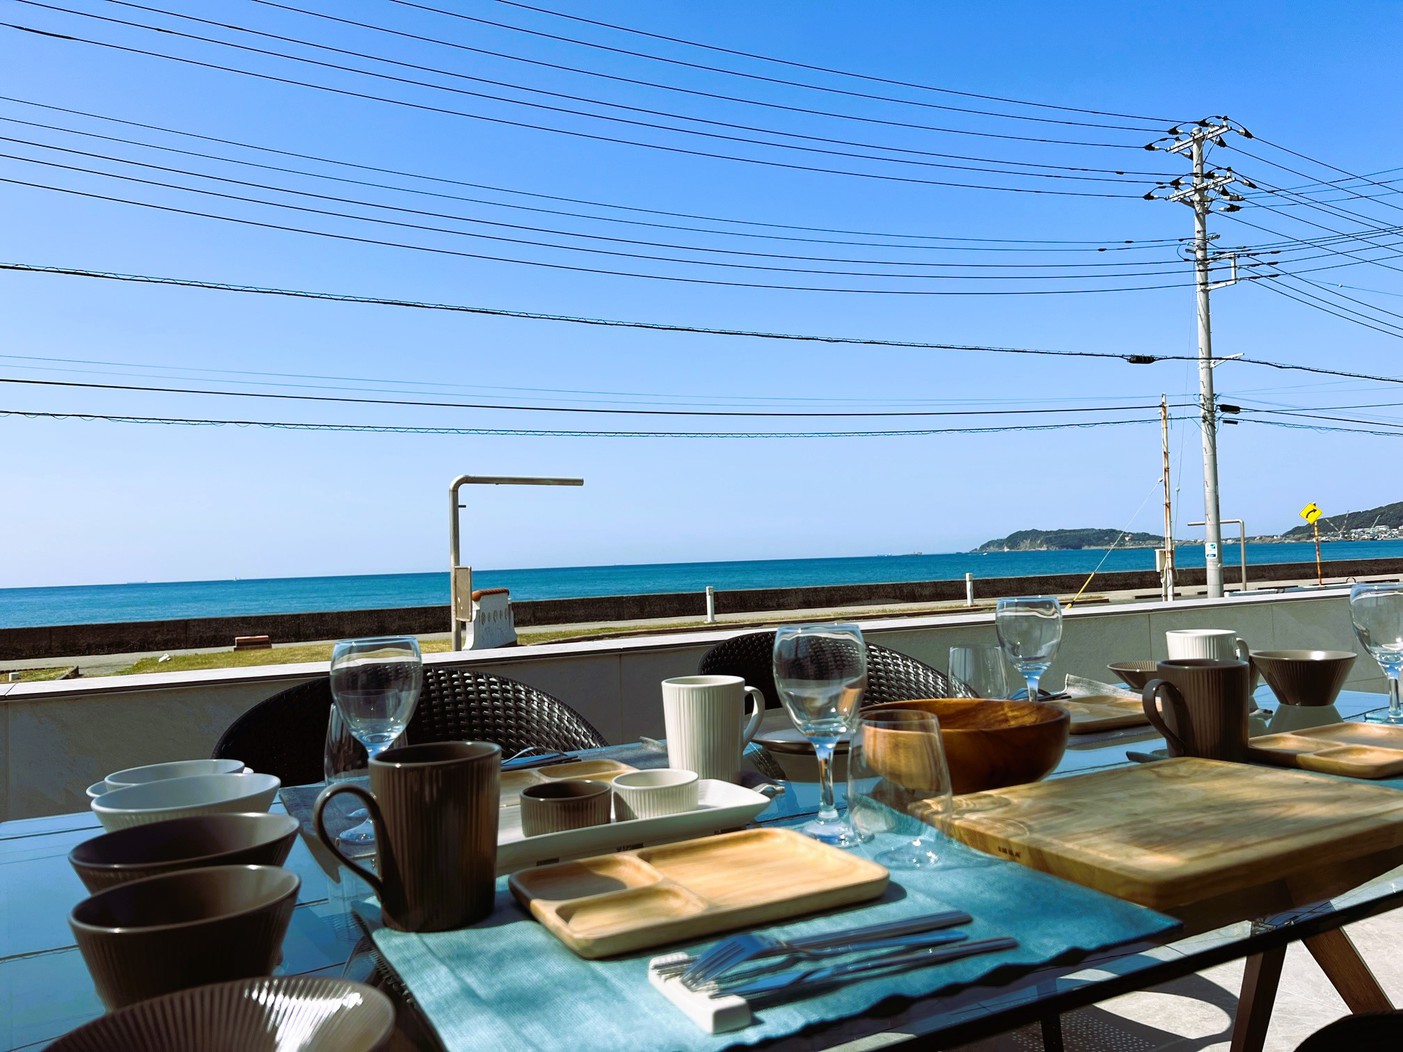 一通りの調理器具・食器類は揃えてございます。海を眺めながら素敵なお食事をお楽しみください。